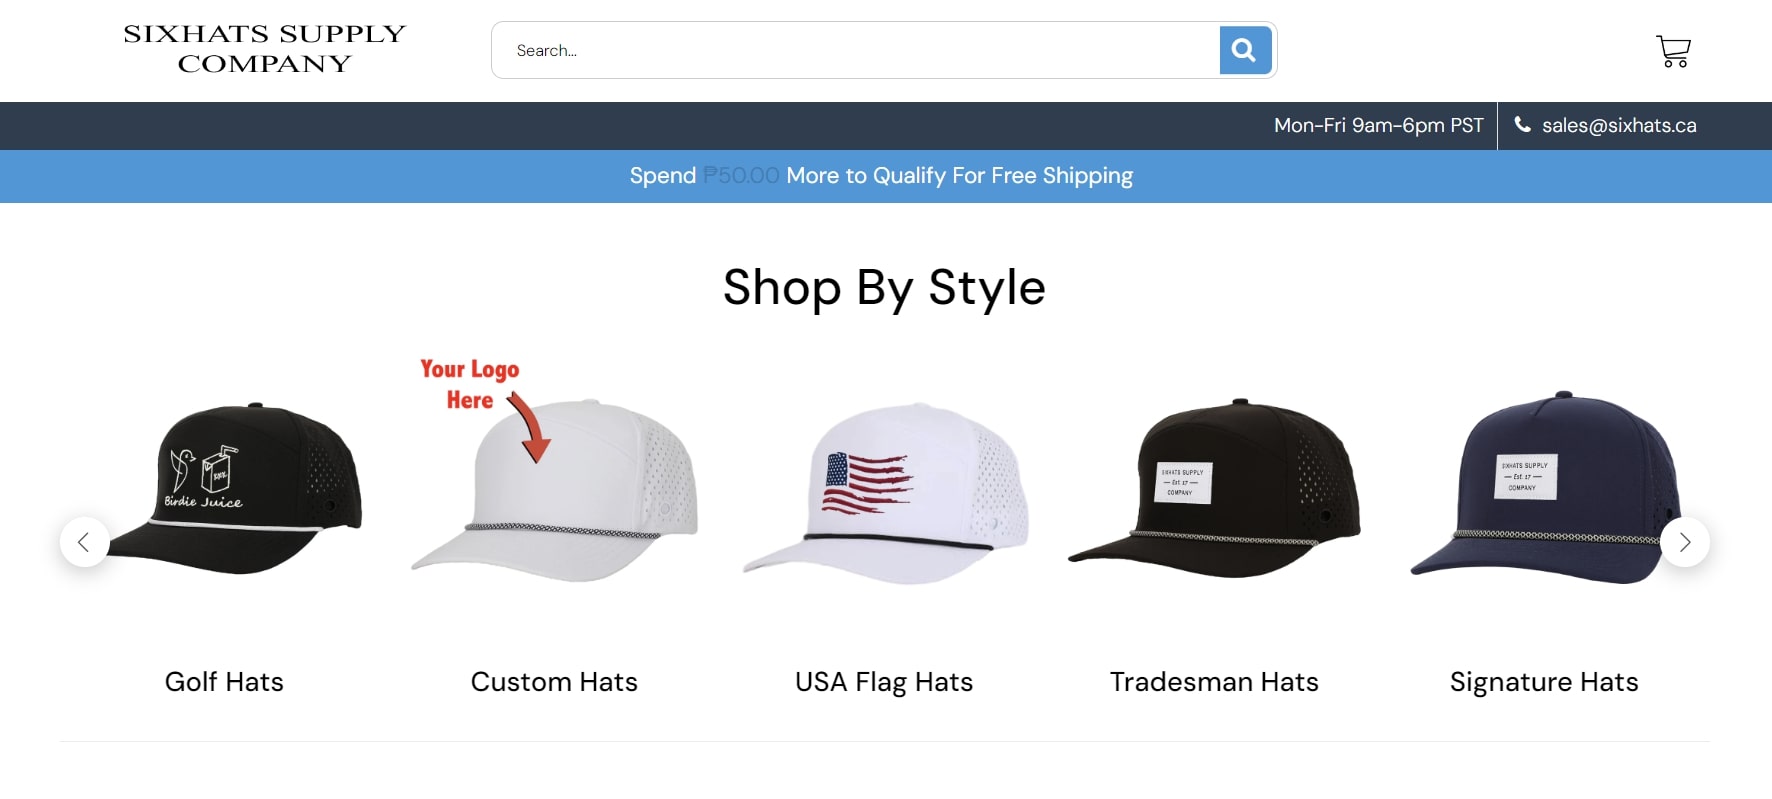 Six Hats Supply Company